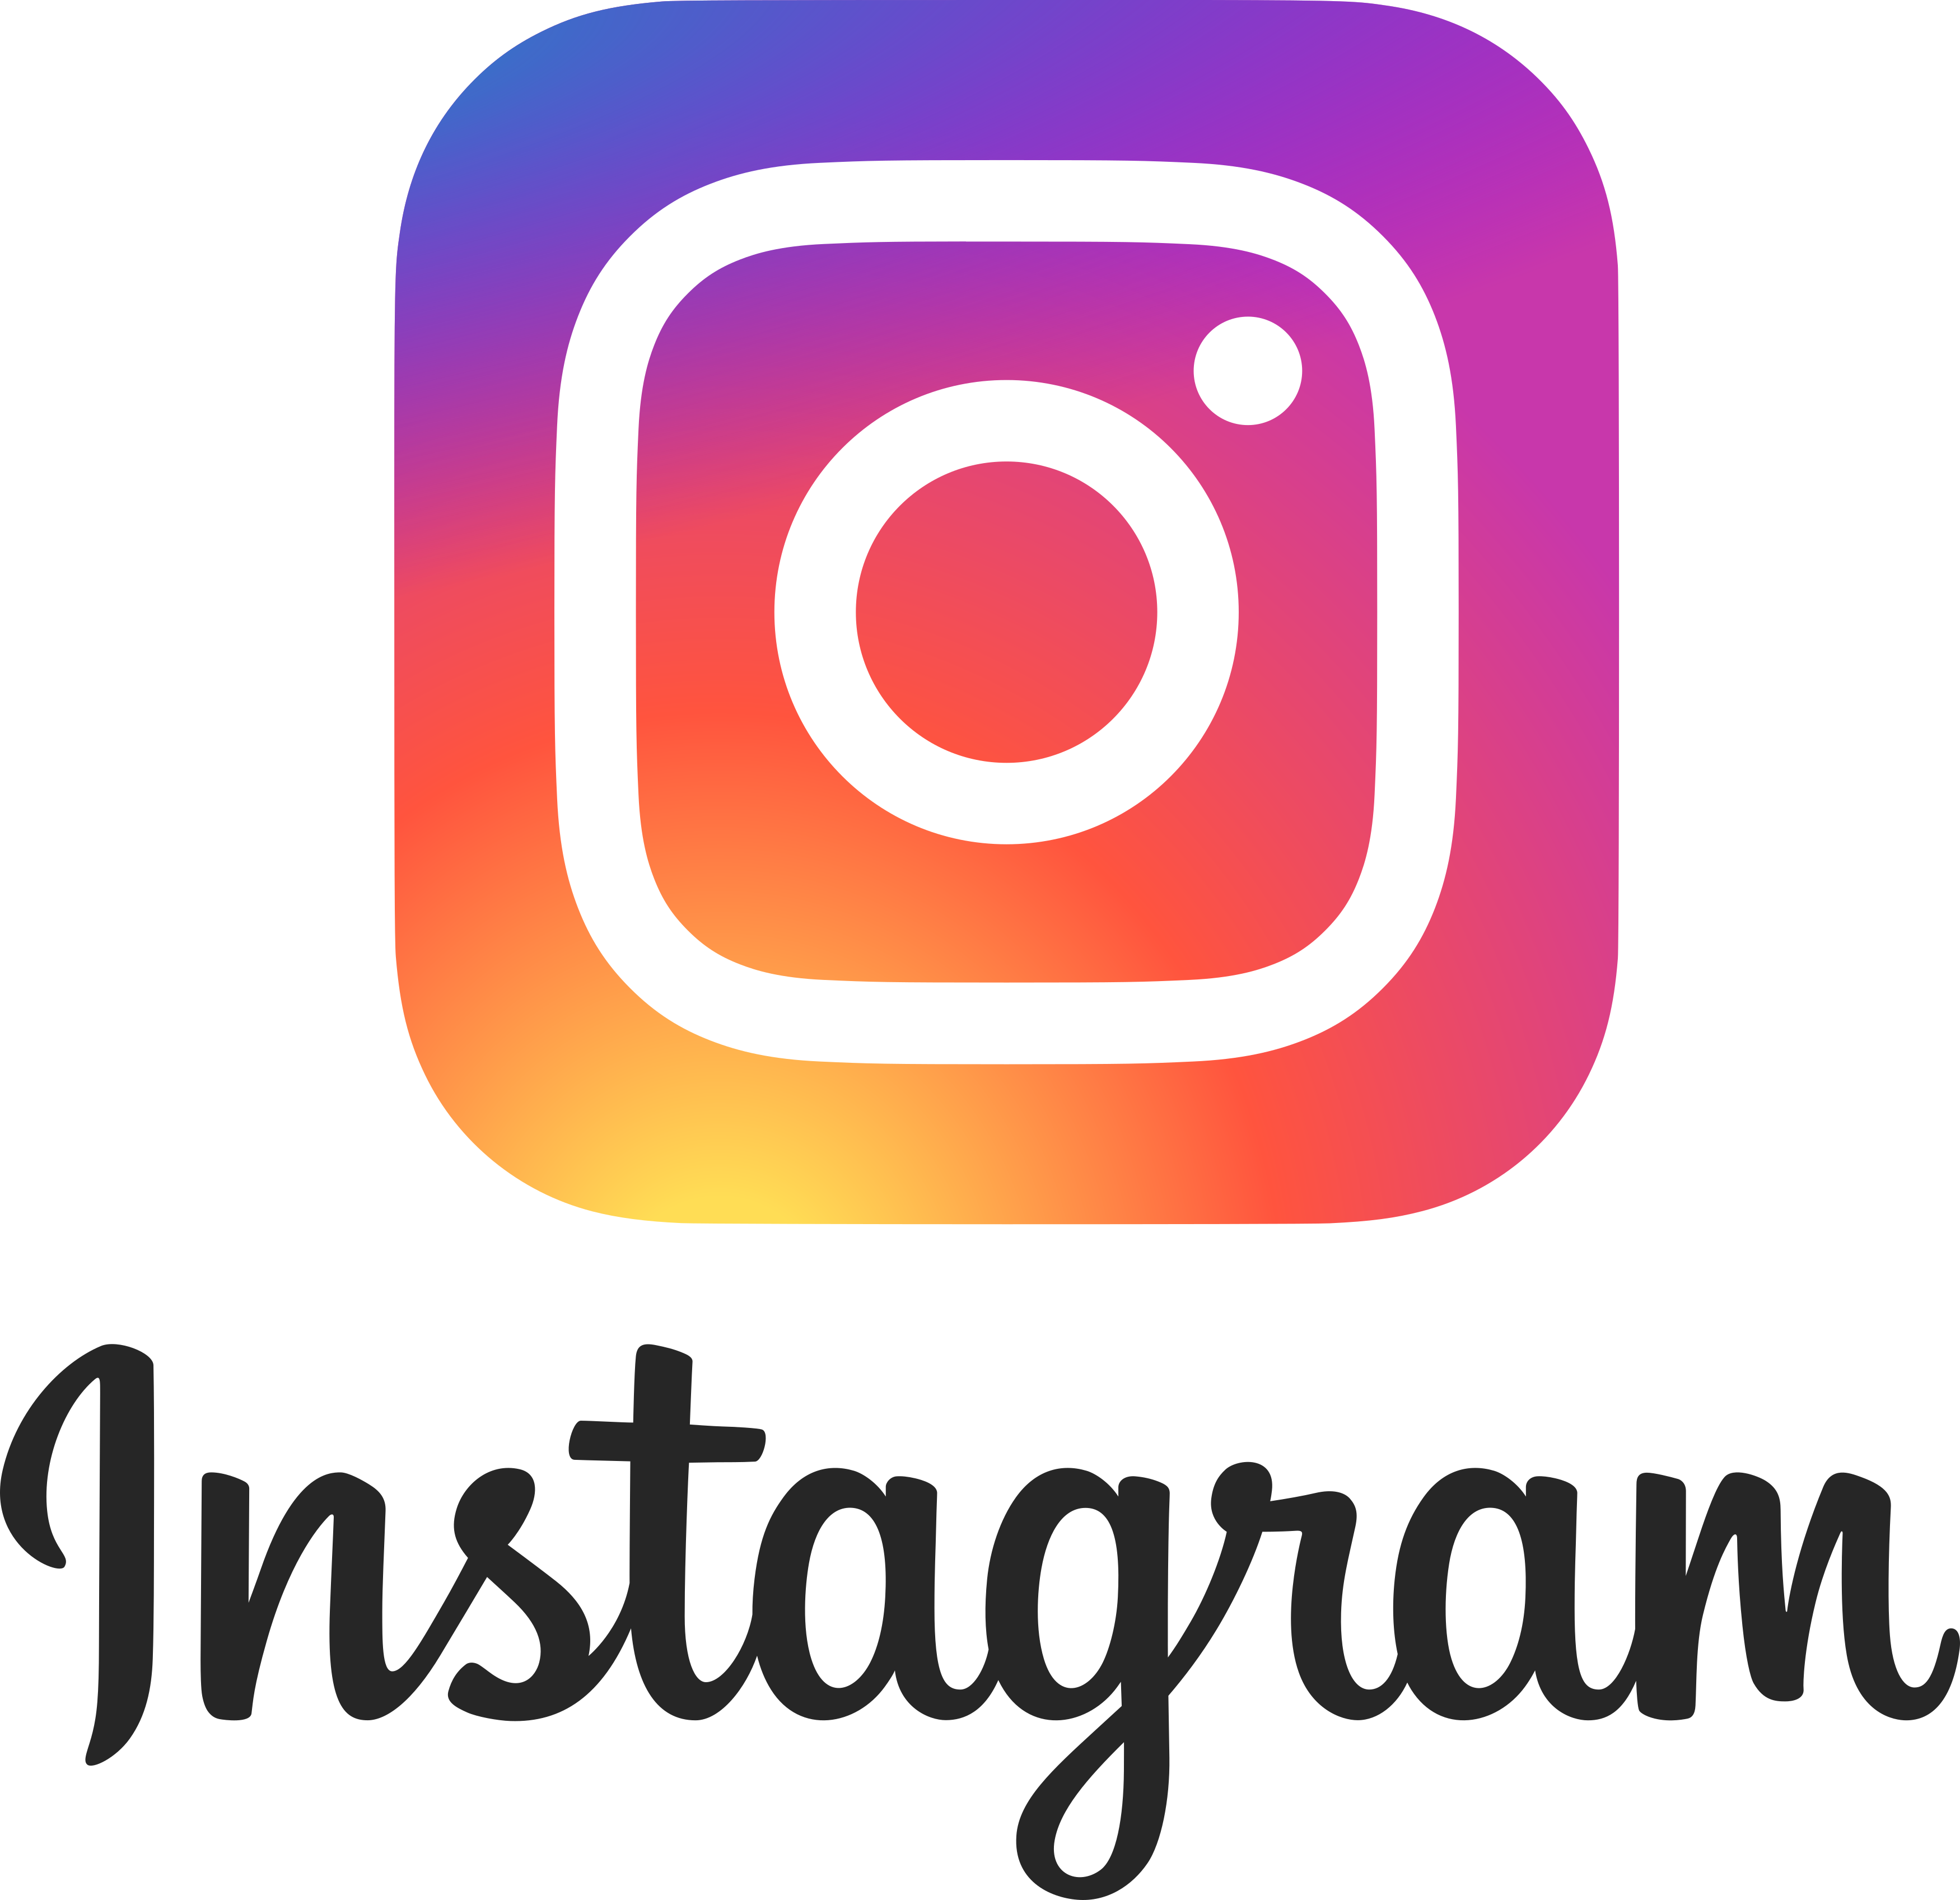 Logo Instagram PNG - 114305